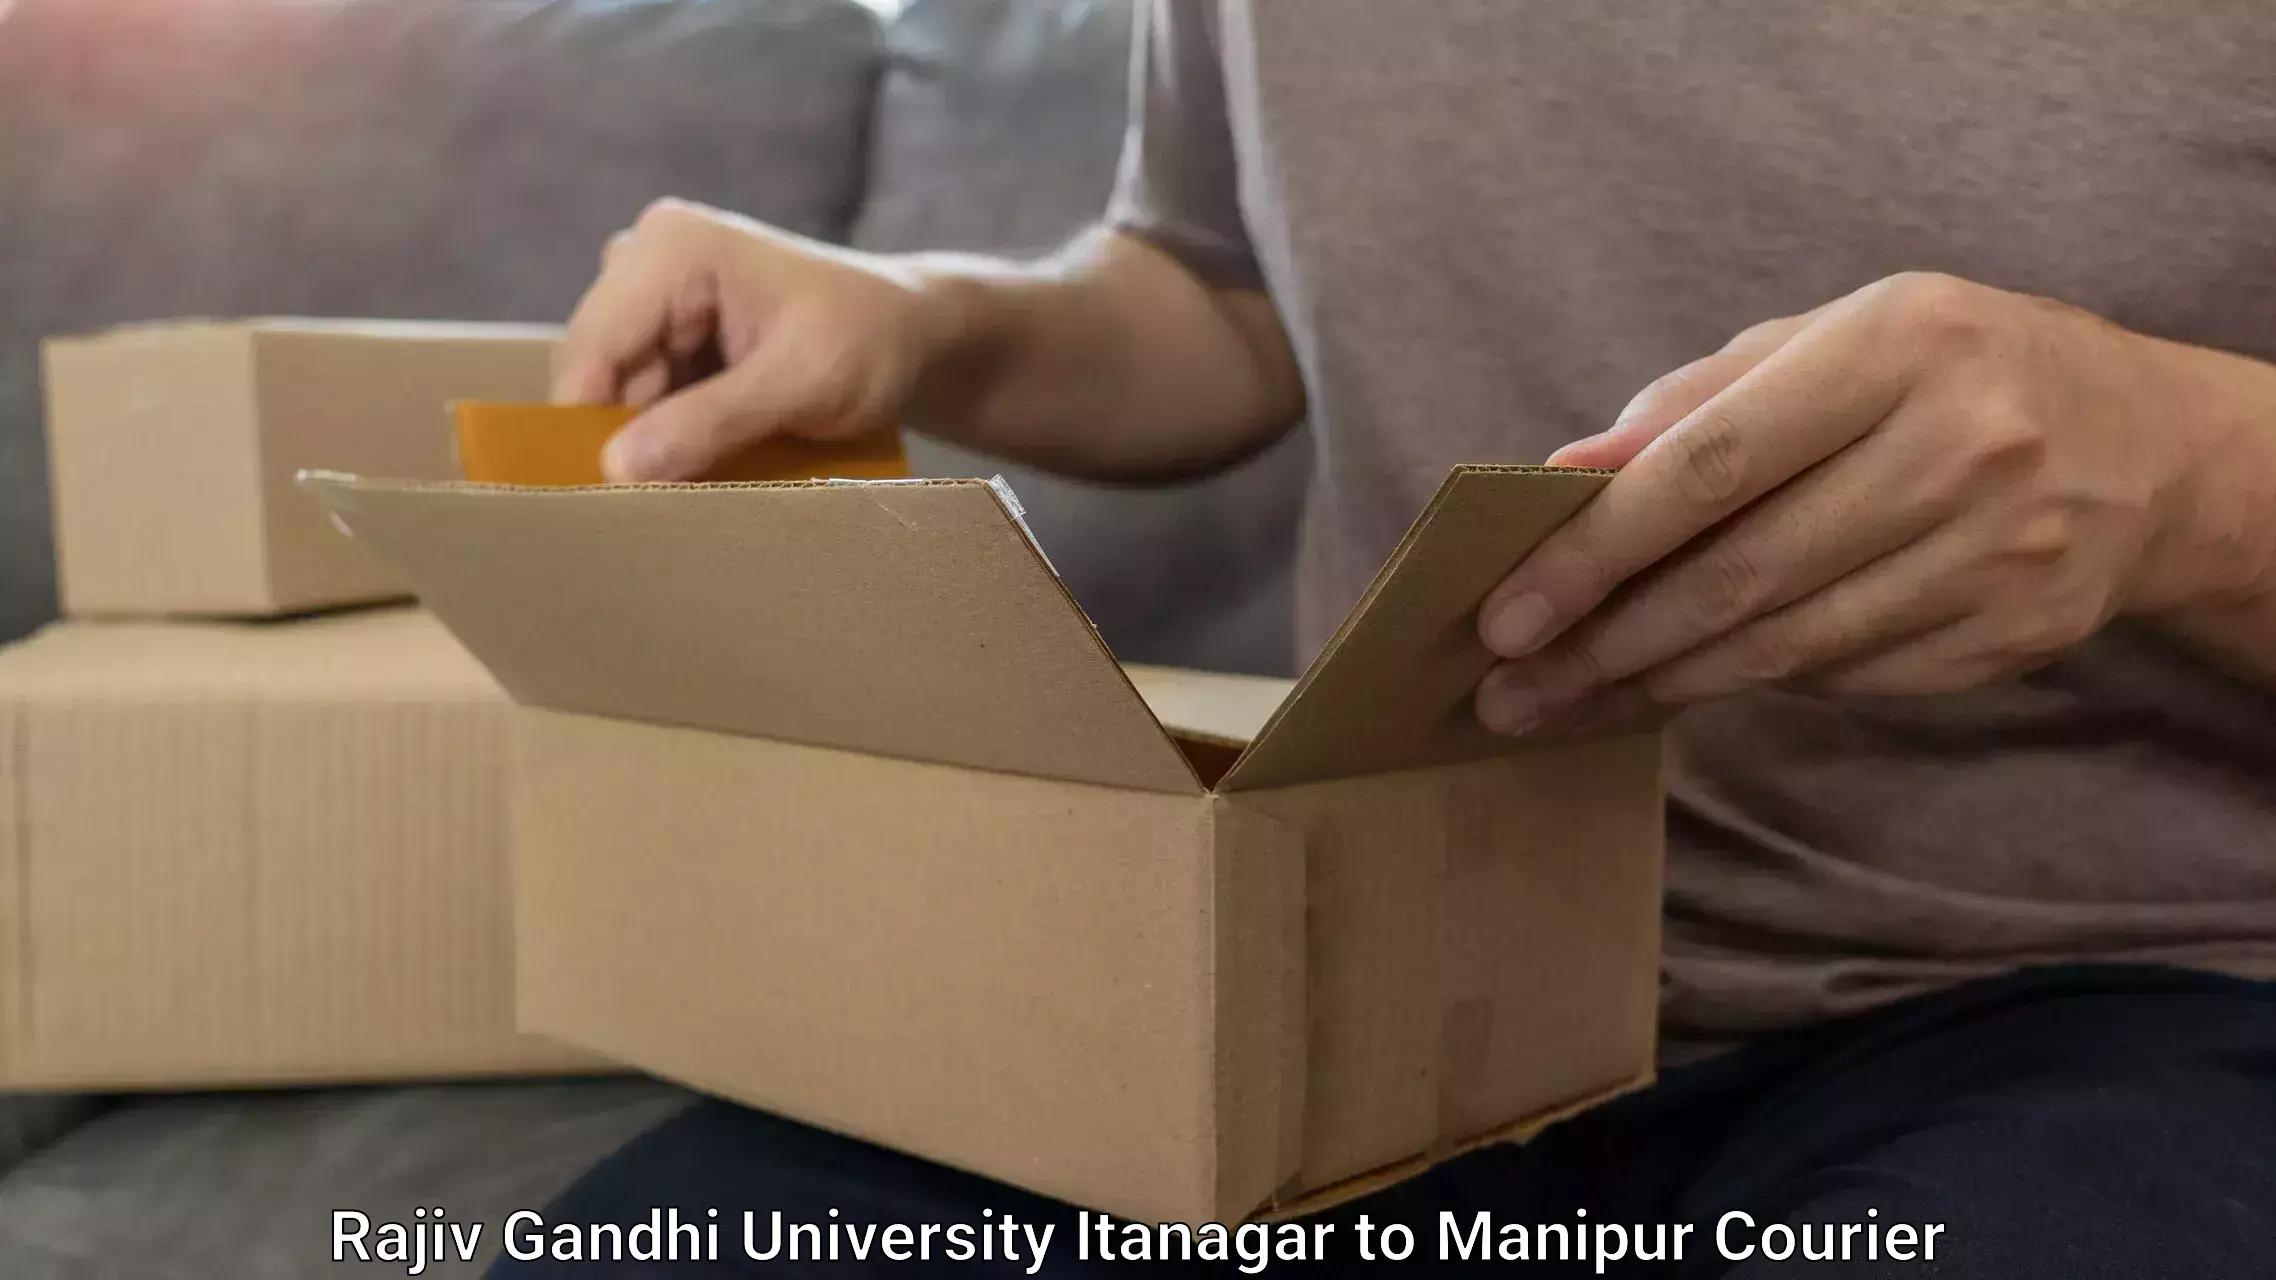 Baggage relocation service Rajiv Gandhi University Itanagar to Manipur